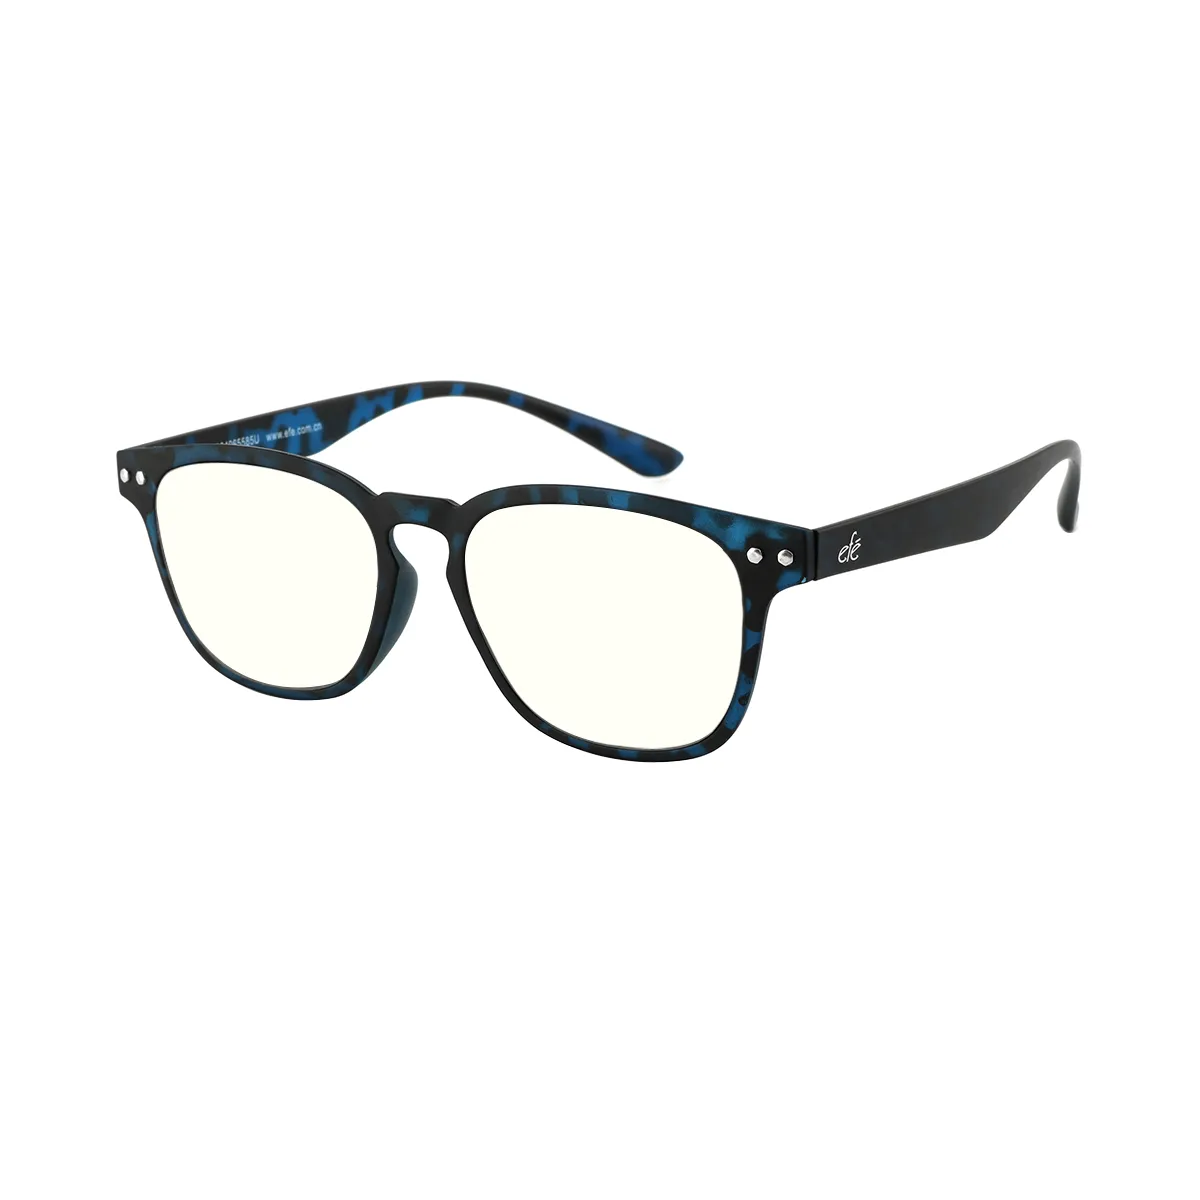 Ellliot - Square  Blue Light Glasses